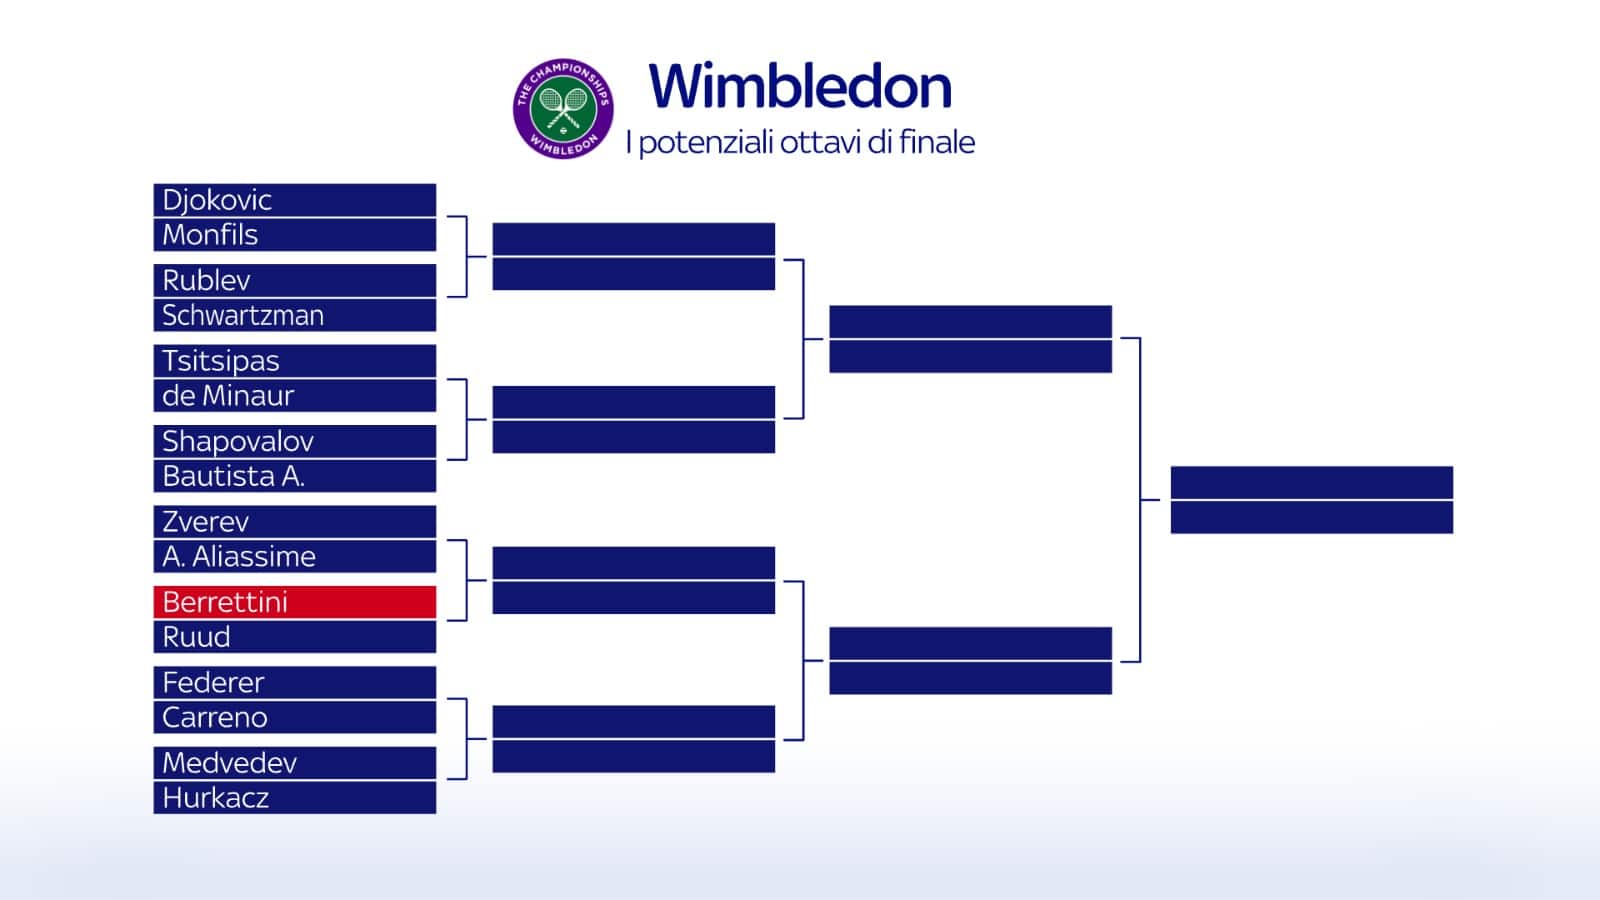 Wimbledon, possibile tabellone ottavi